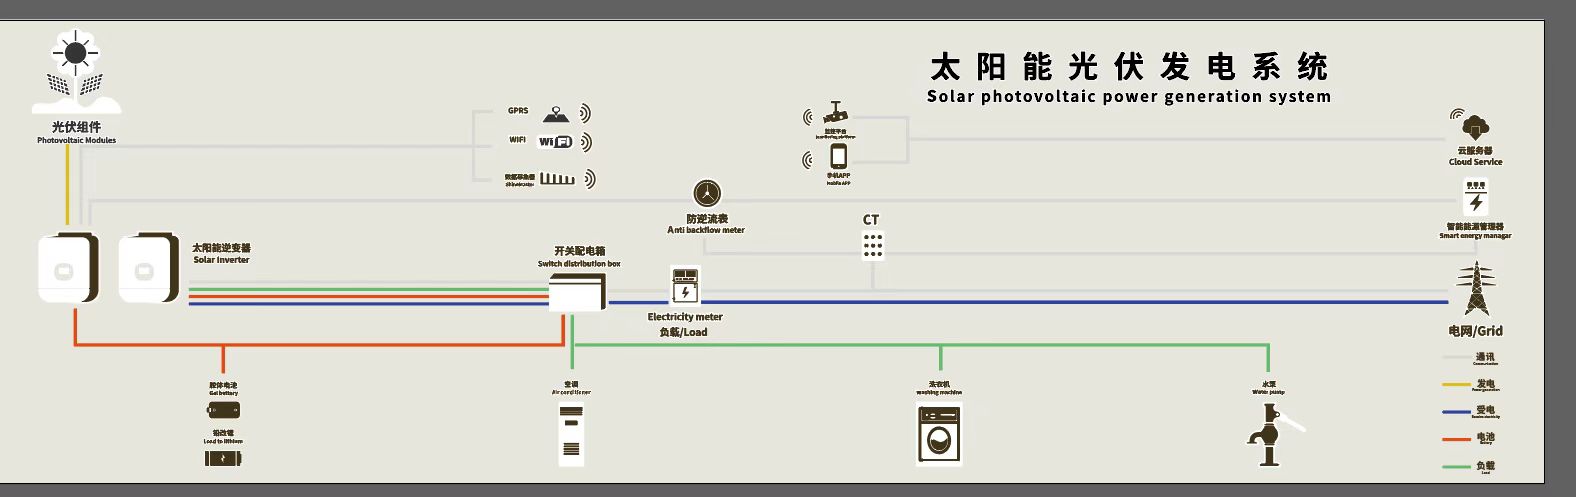 5kw نظام الطاقة الشمسية الكامل انطلق من الشبكة للاستخدام المنزلي